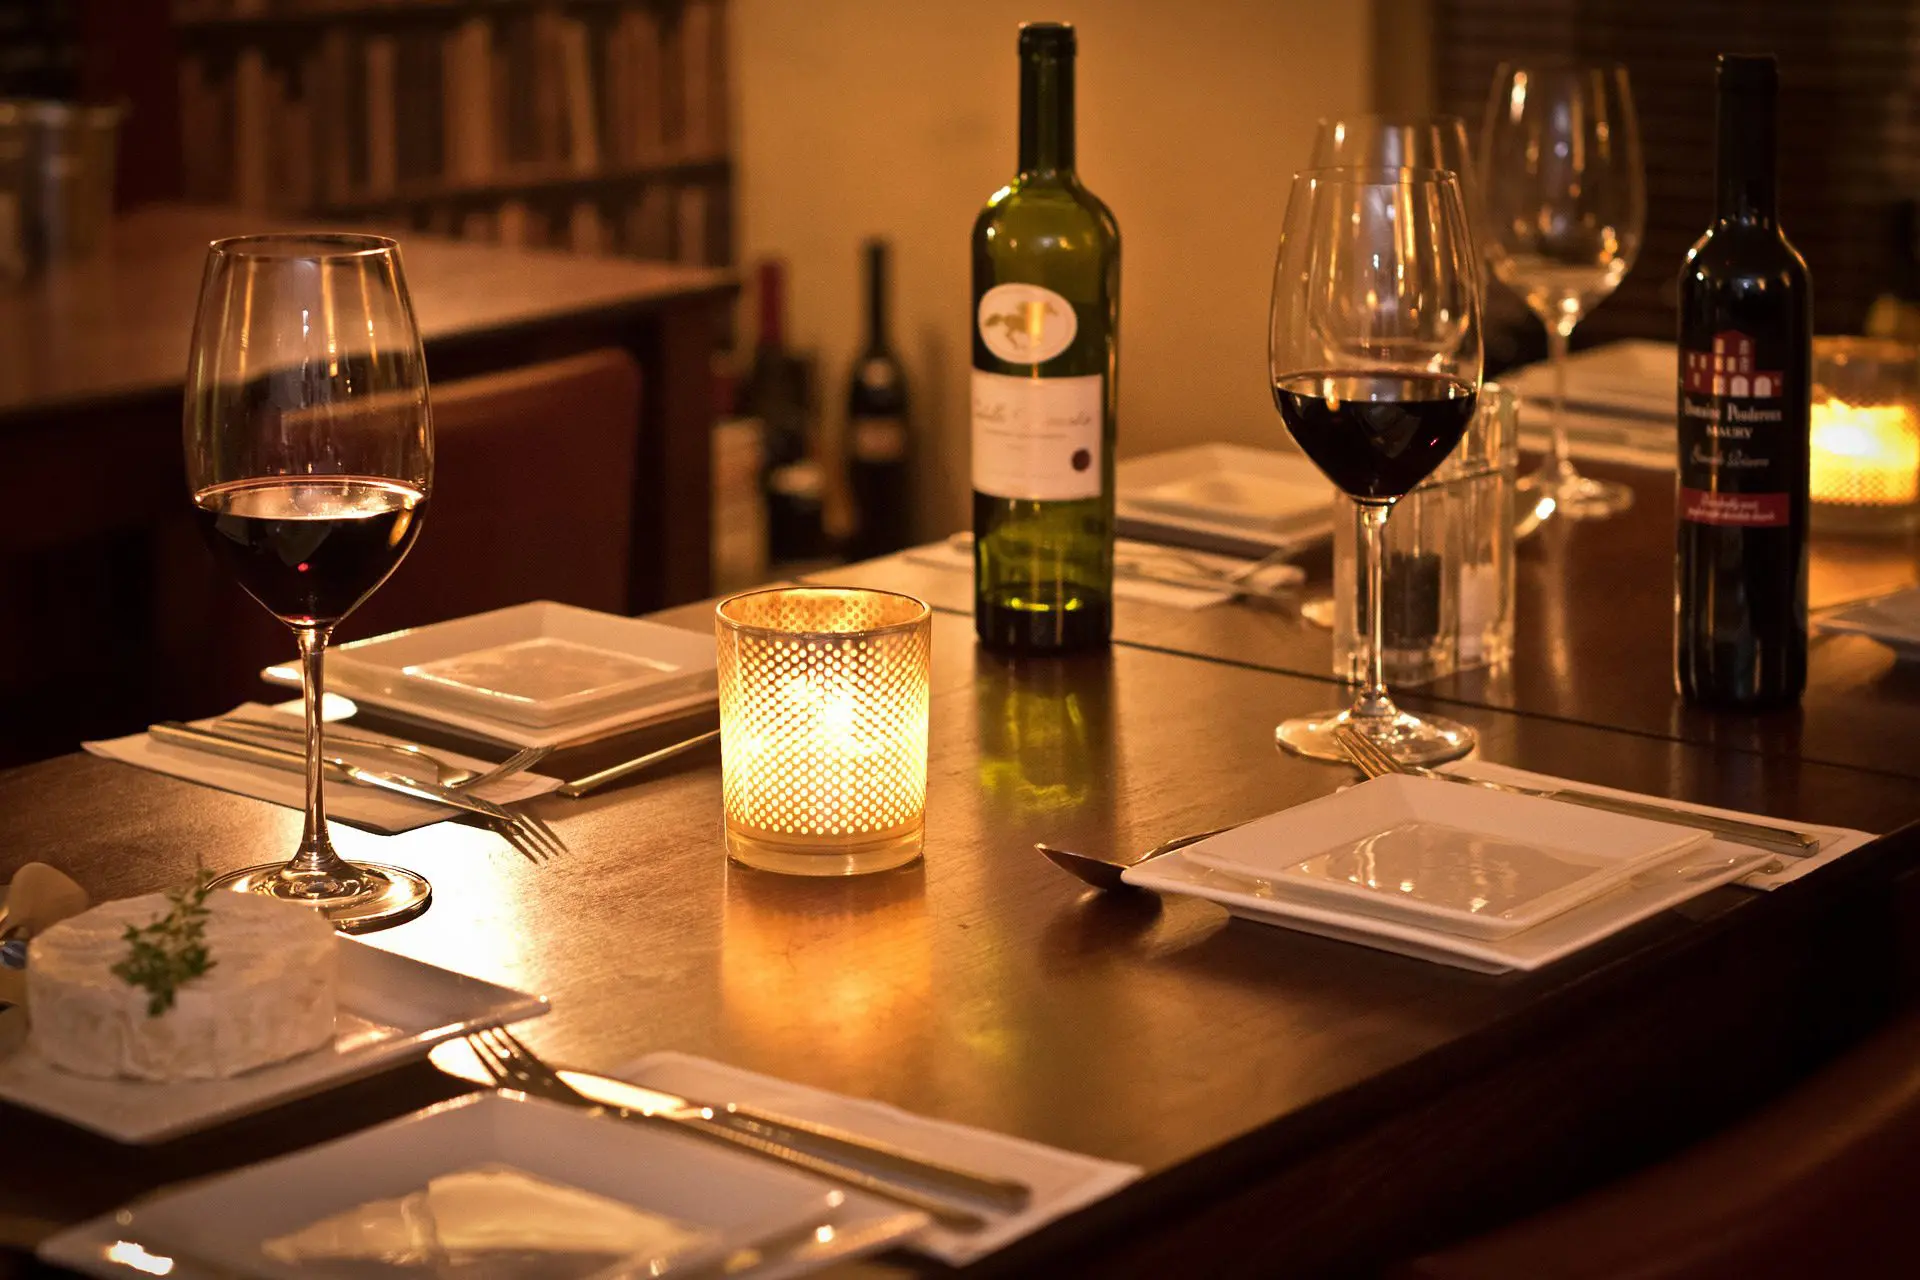 restaurant dinner wine - Serrato's Steakhouse, Restaurant for Fine Dining in Franklin, TN